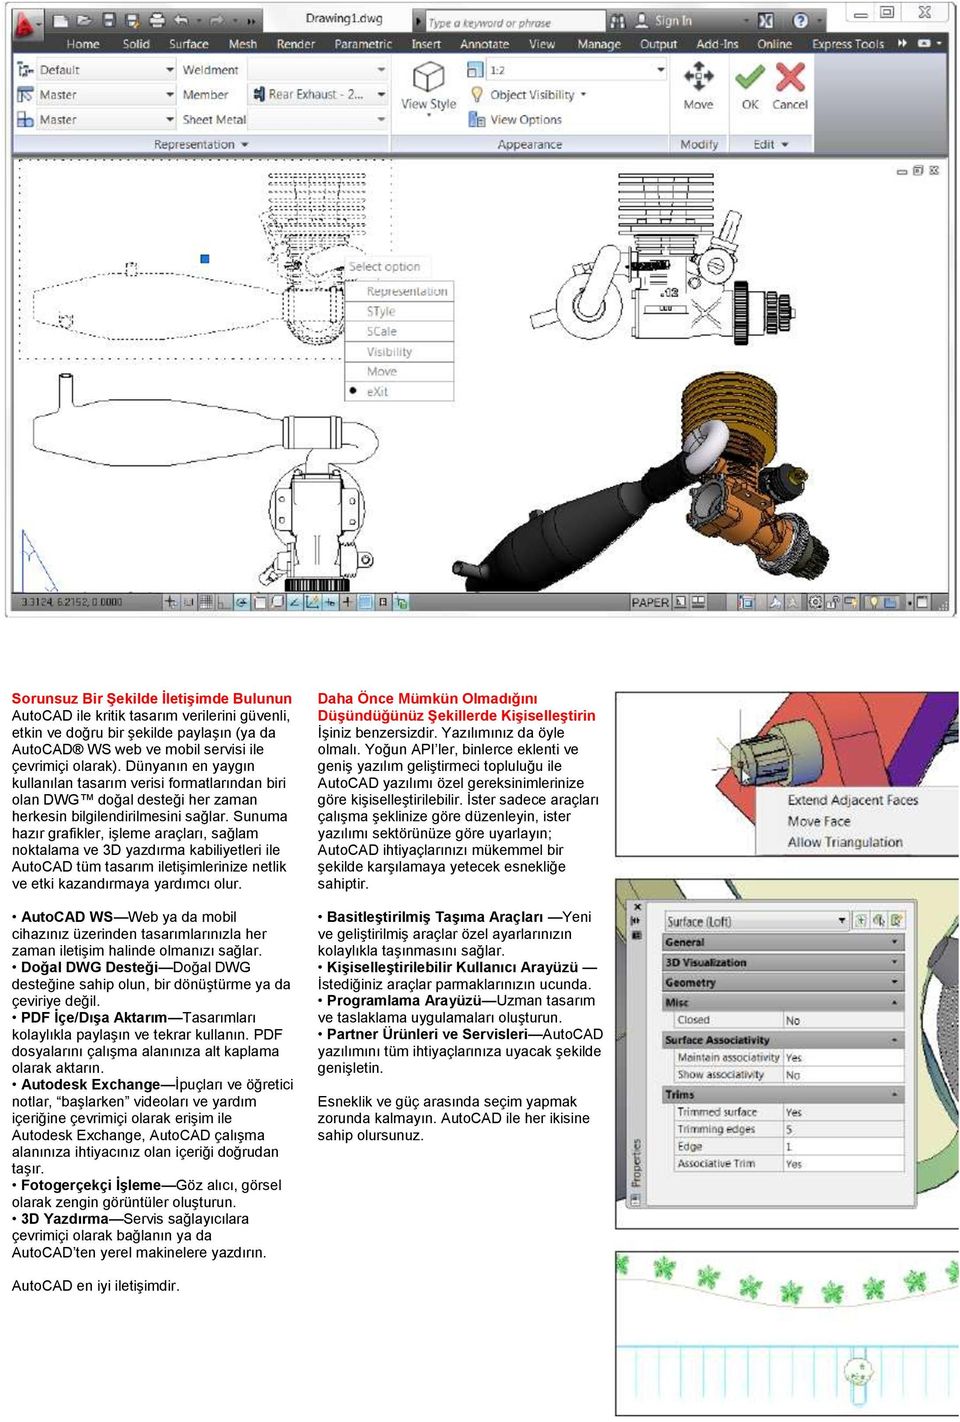 Sunuma hazır grafikler, işleme araçları, sağlam noktalama ve 3D yazdırma kabiliyetleri ile AutoCAD tüm tasarım iletişimlerinize netlik ve etki kazandırmaya yardımcı olur.